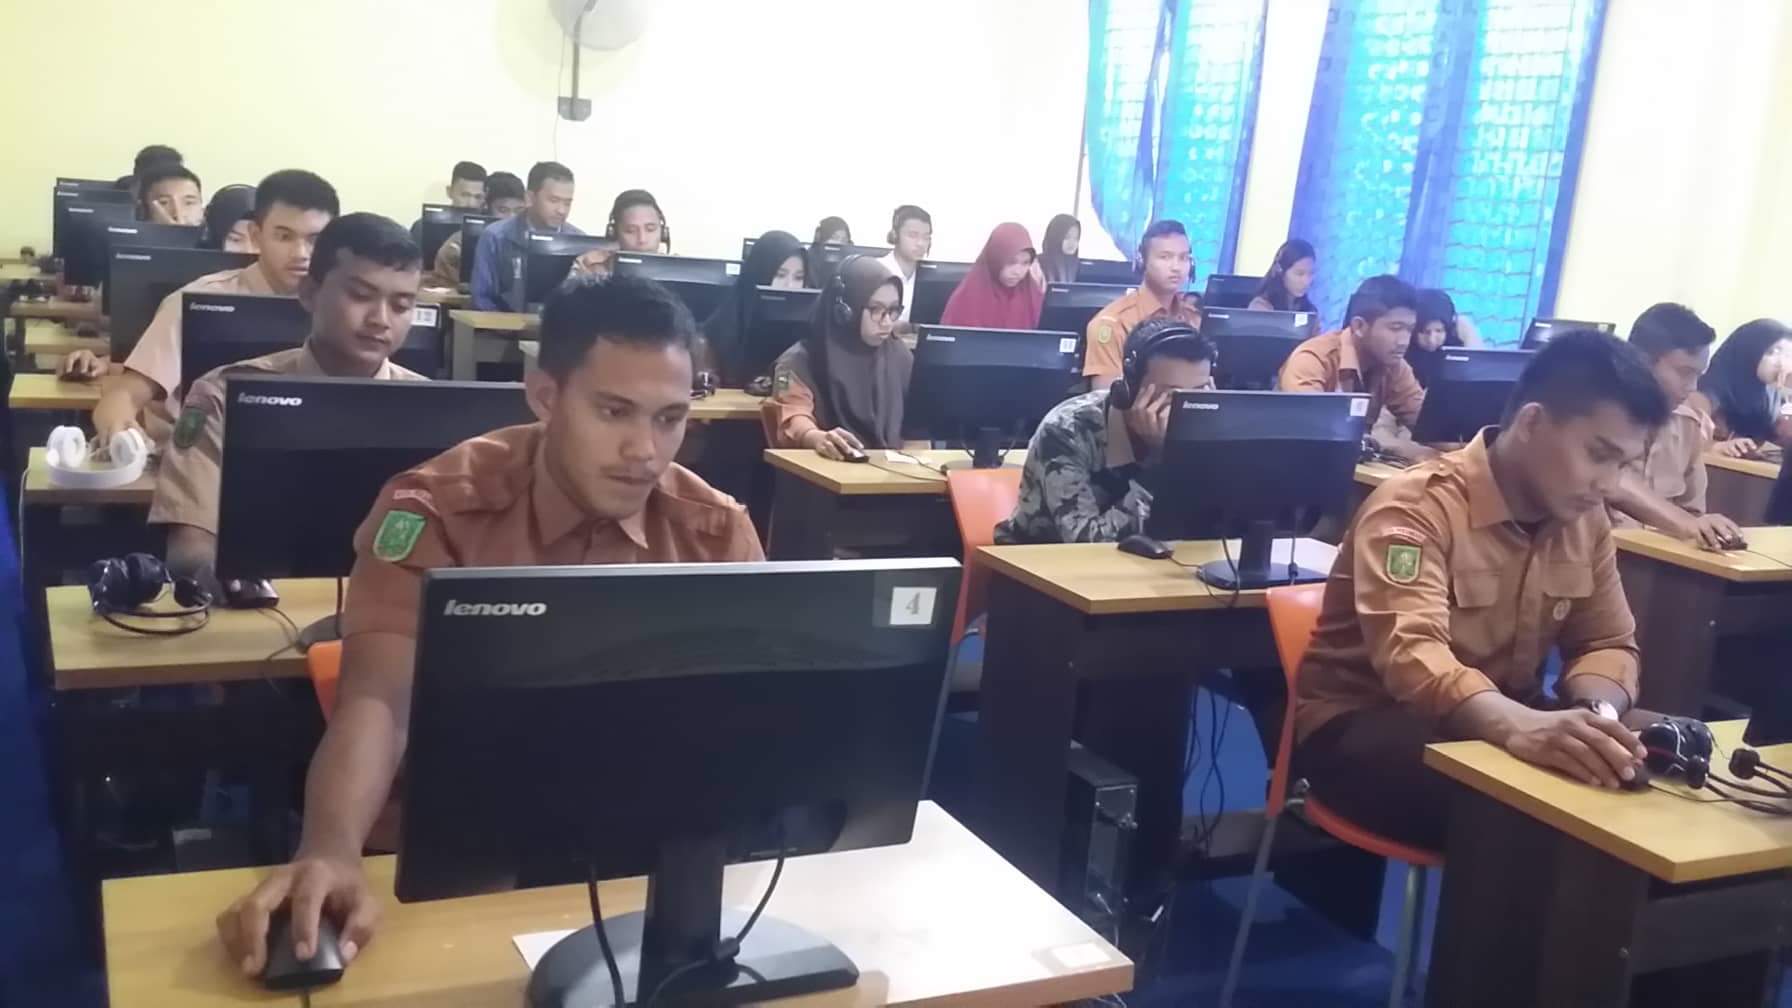 151 Siswa SMAN Olah Raga Provinsi Riau Ikut Try Out Berbasis Komputer